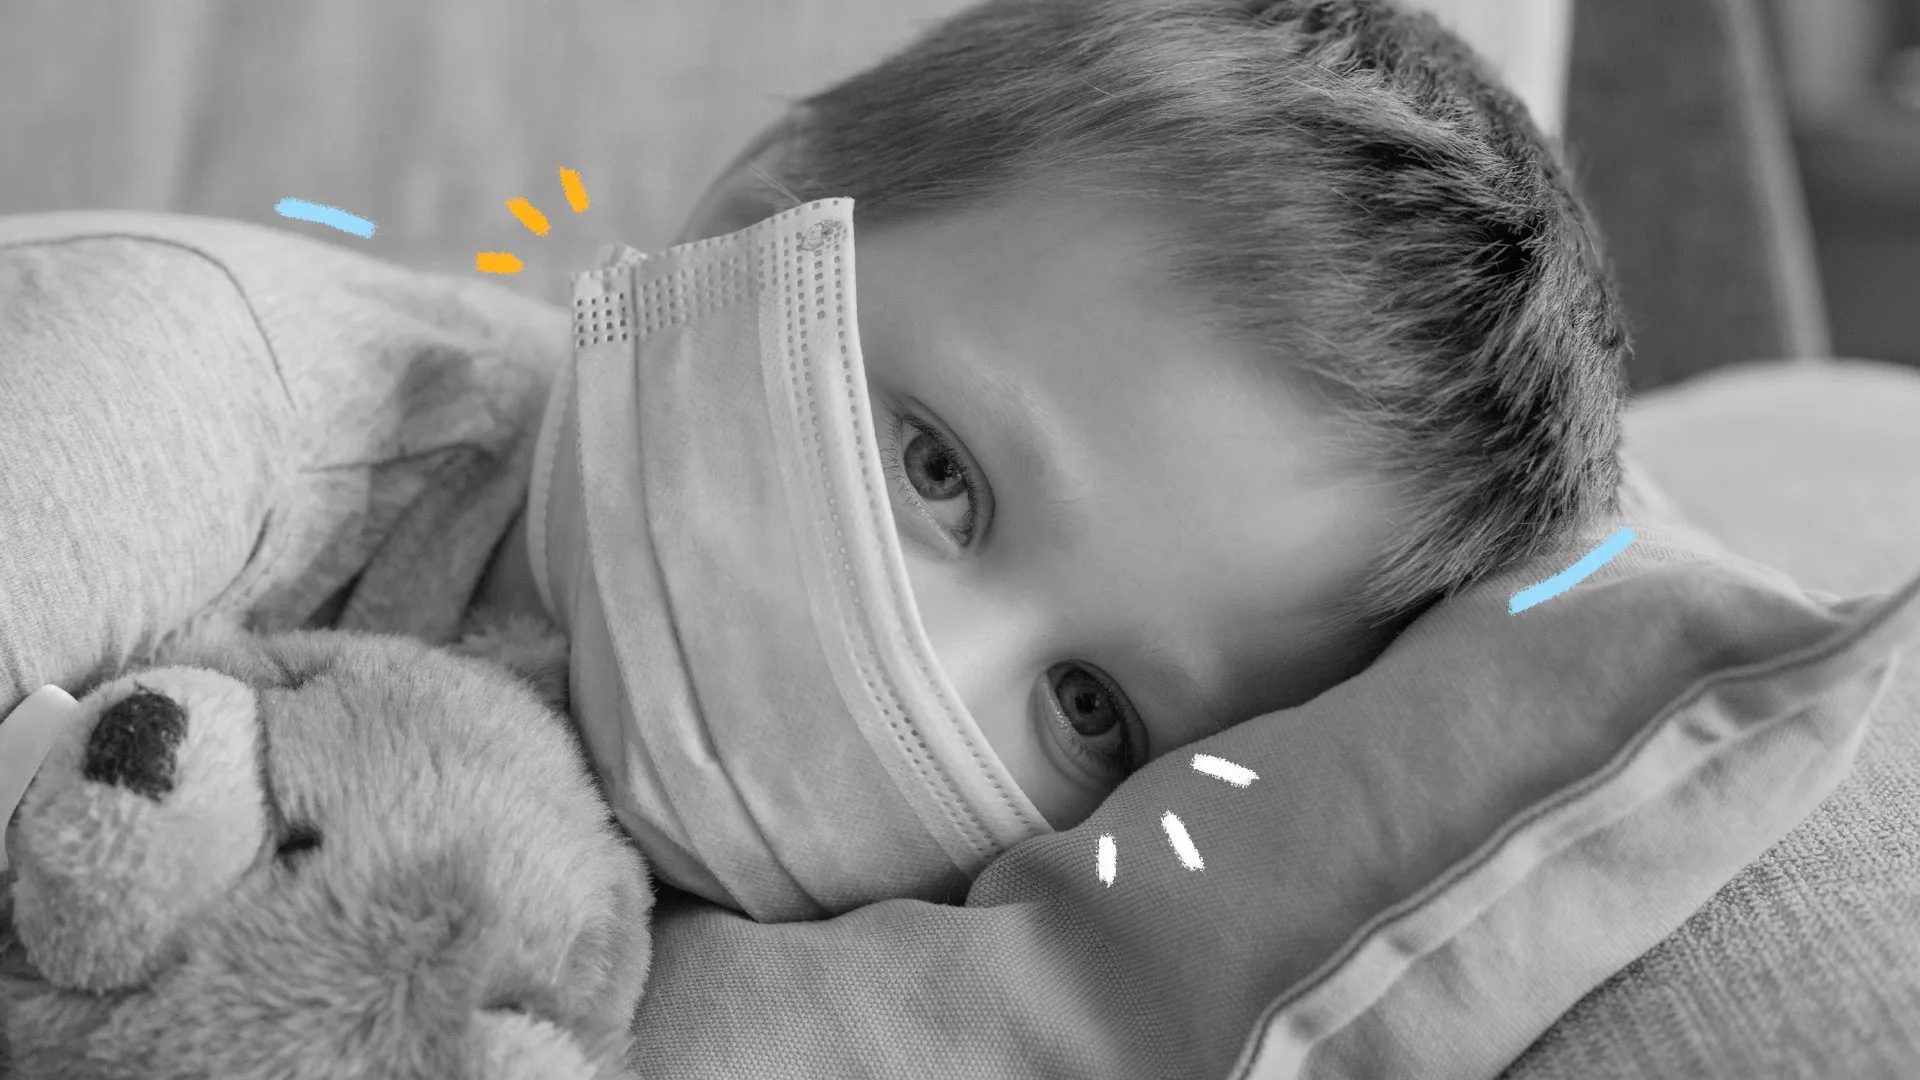 Foto em preto e branco de uma criança, com máscara, deitada em um leito, com olhar triste